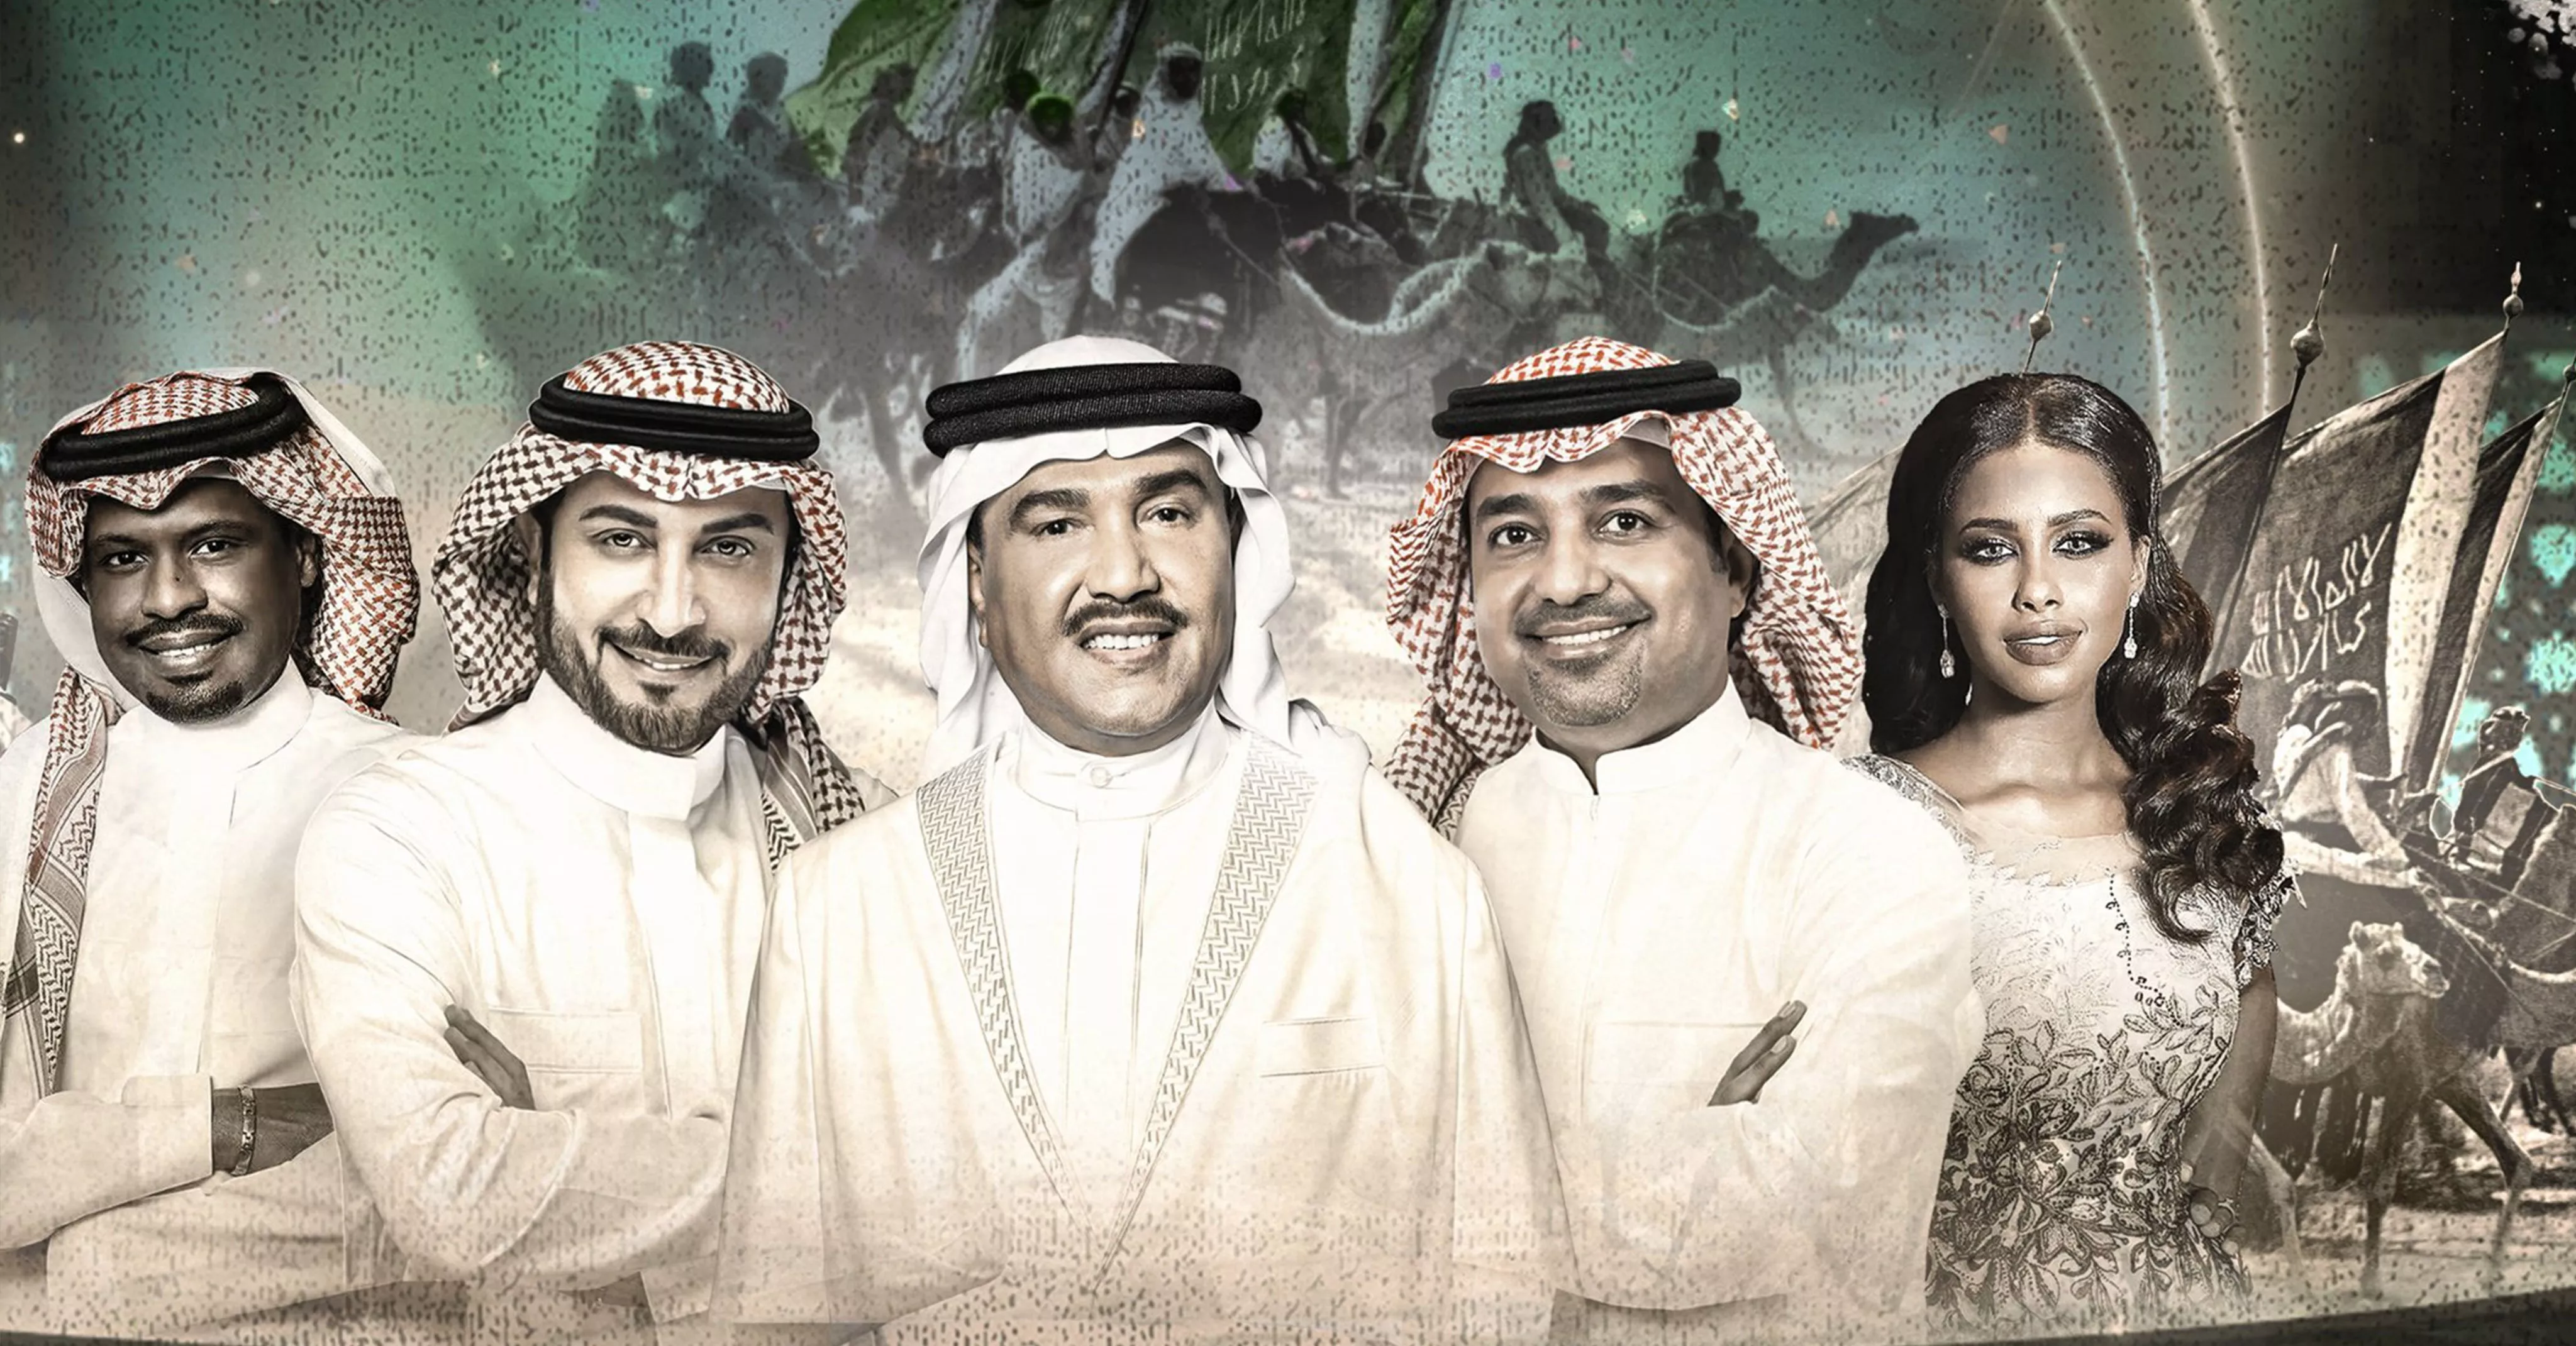 ما هي مواعيد الحفلات الغنائية في يوم التأسيس السعودي 2022؟